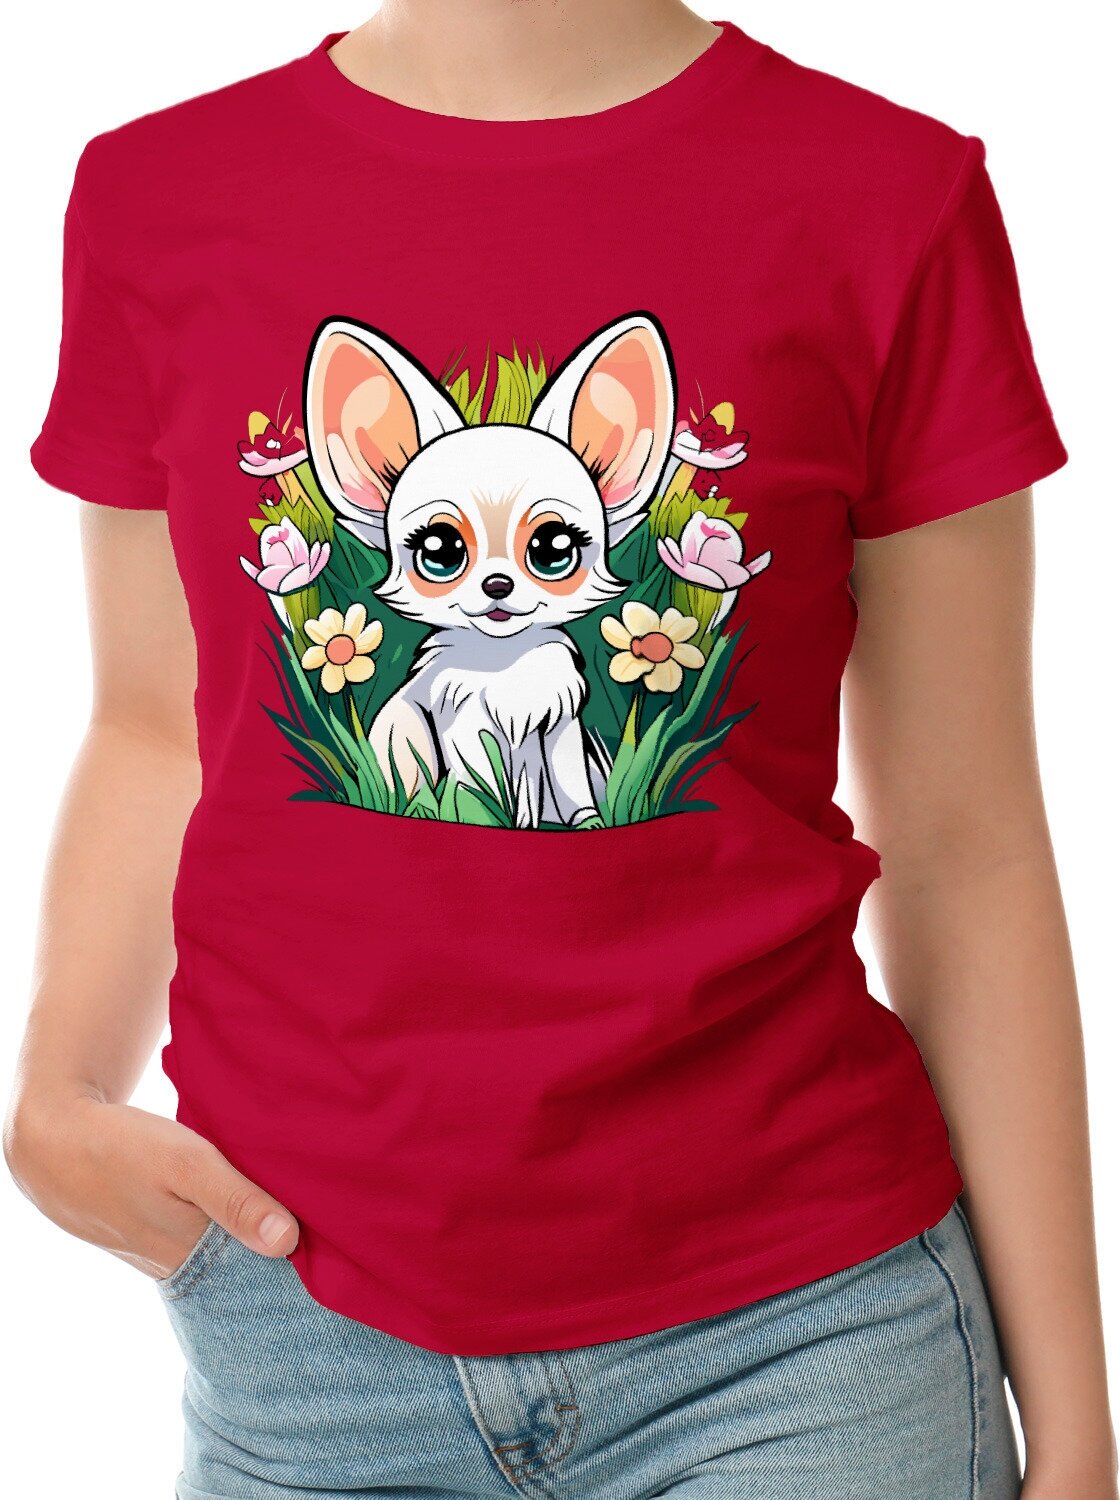 Женская футболка «Милая собачка среди травы и цветов» (L 